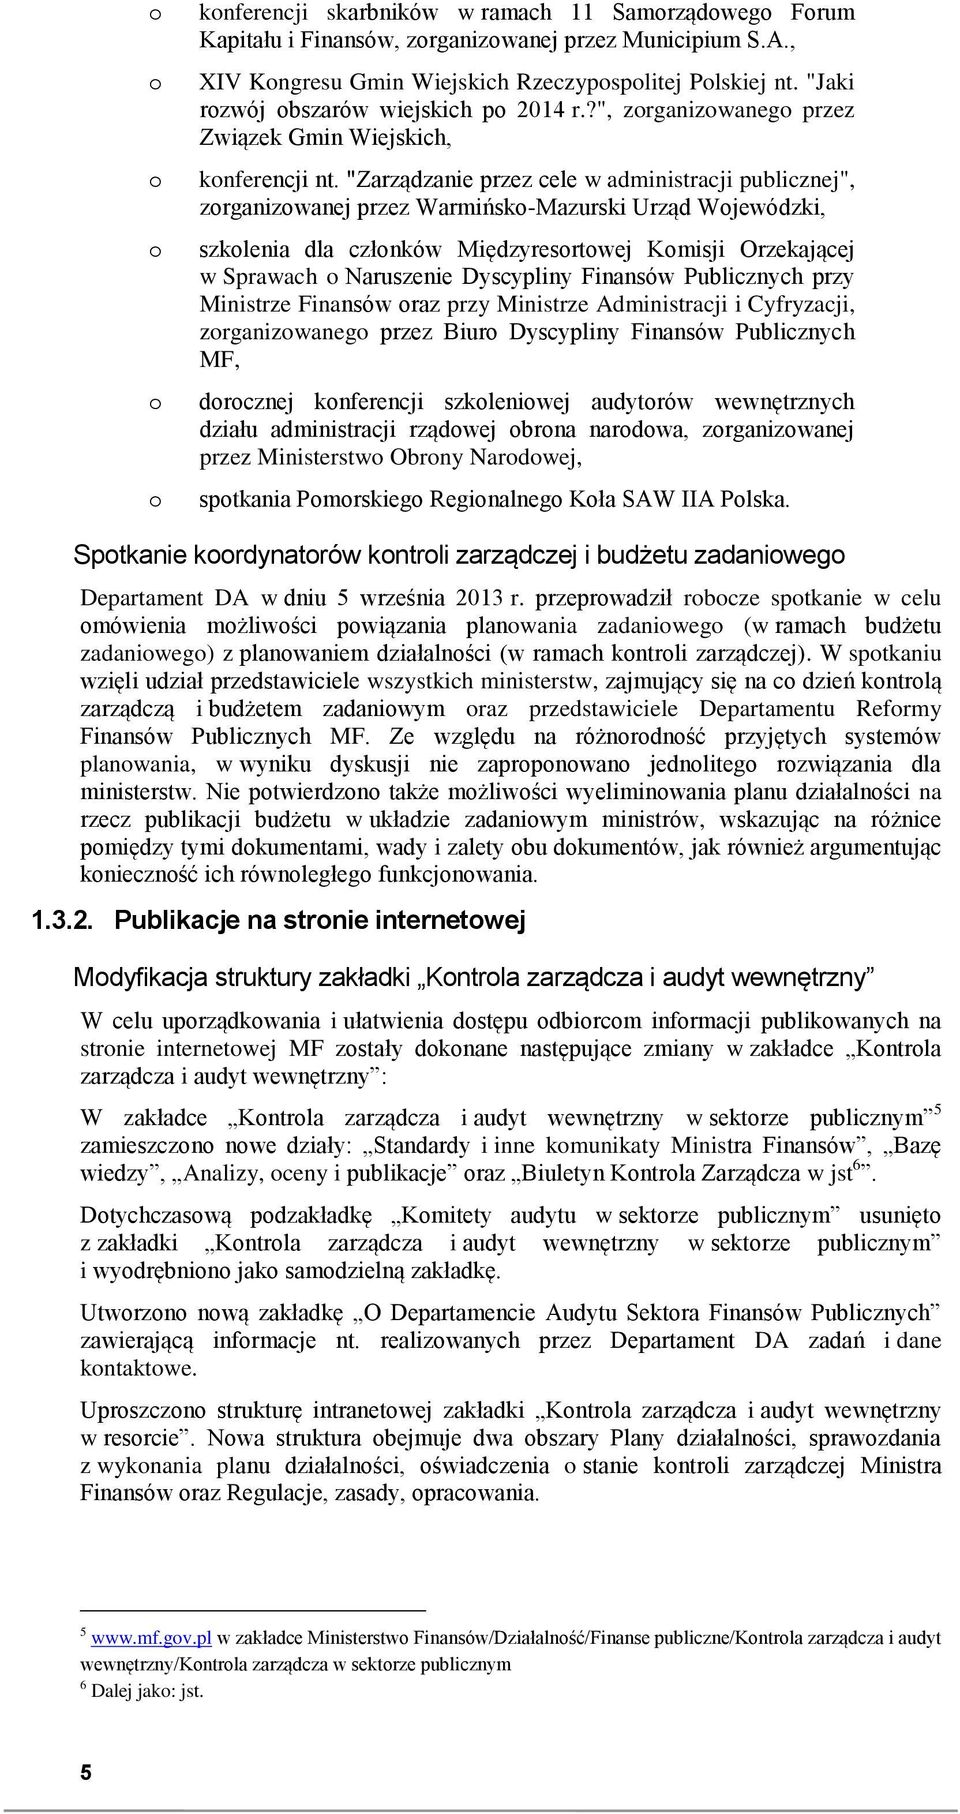 "Zarządzanie przez cele w administracji publicznej", zrganizwanej przez Warmińsk-Mazurski Urząd Wjewódzki, szklenia dla człnków Międzyresrtwej Kmisji Orzekającej w Sprawach Naruszenie Dyscypliny